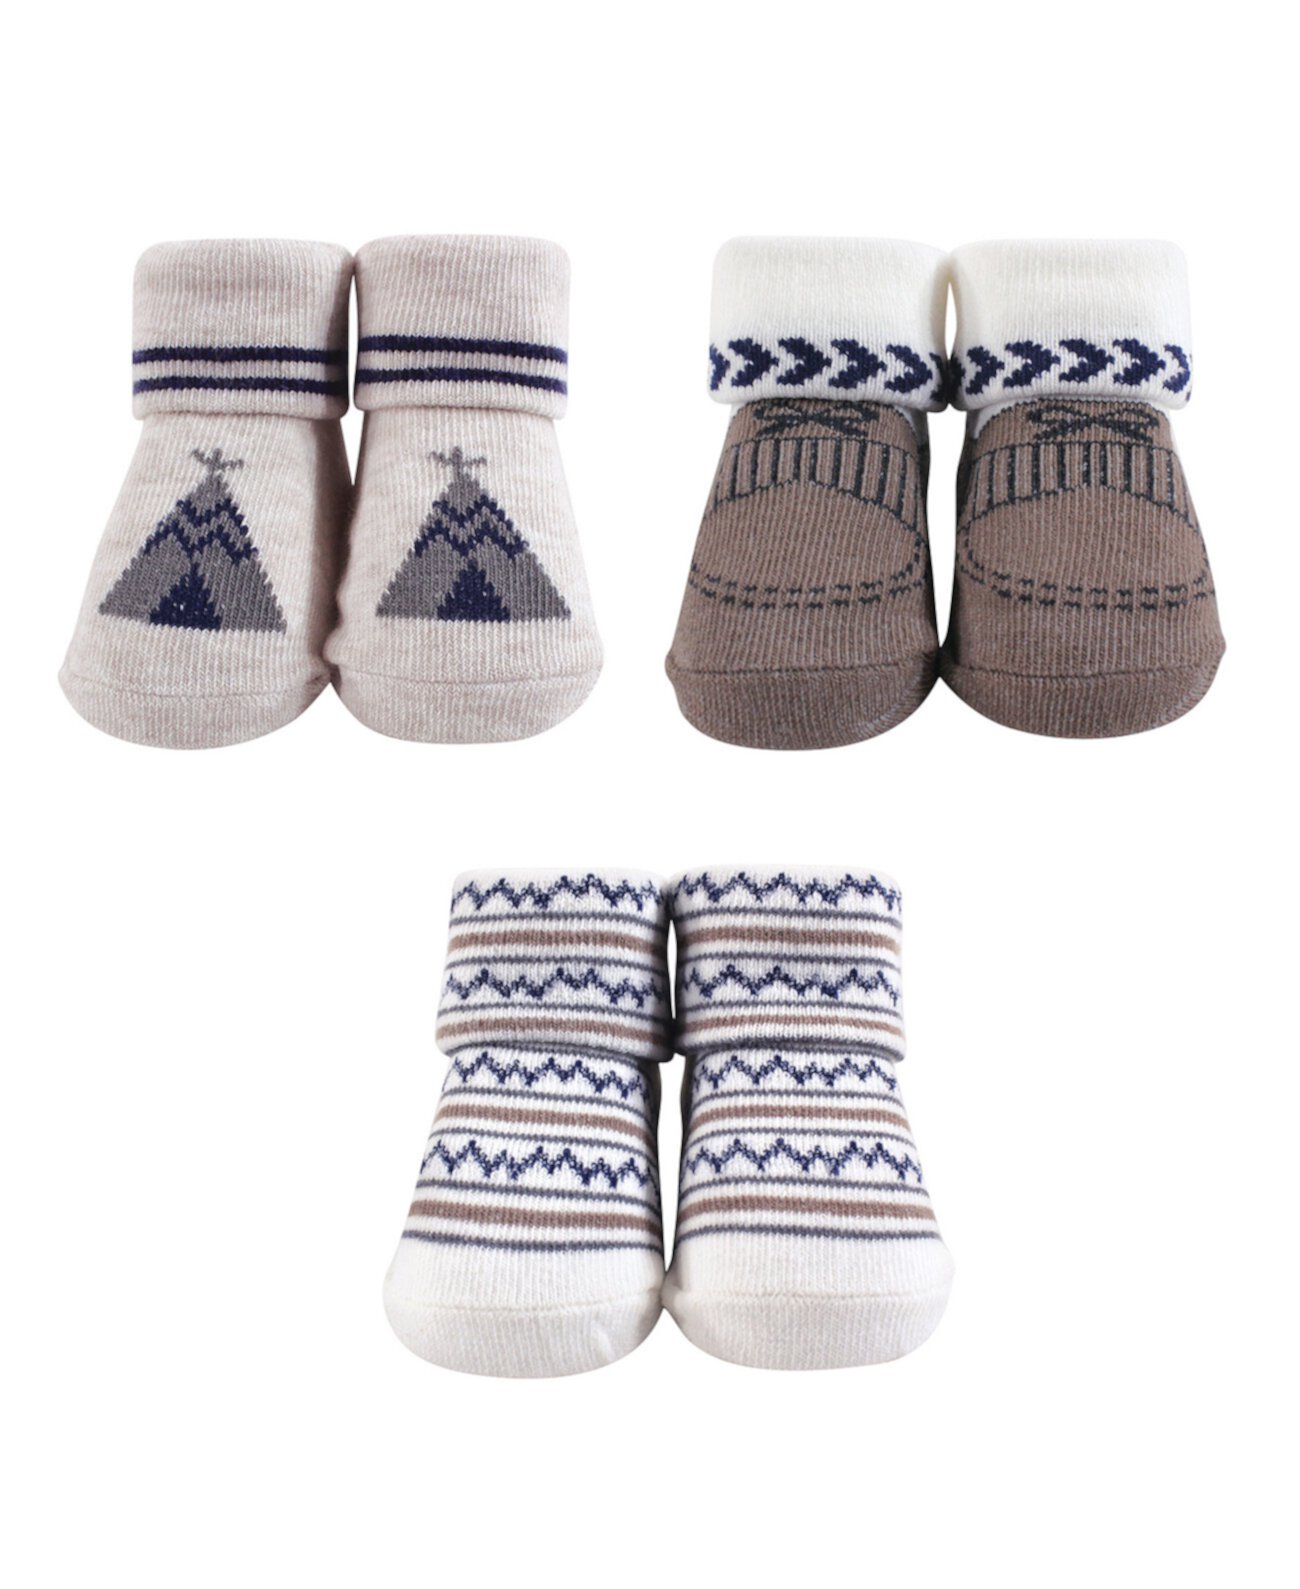 Baby Girl Socks Gift Set, 3-Pack Hudson Baby